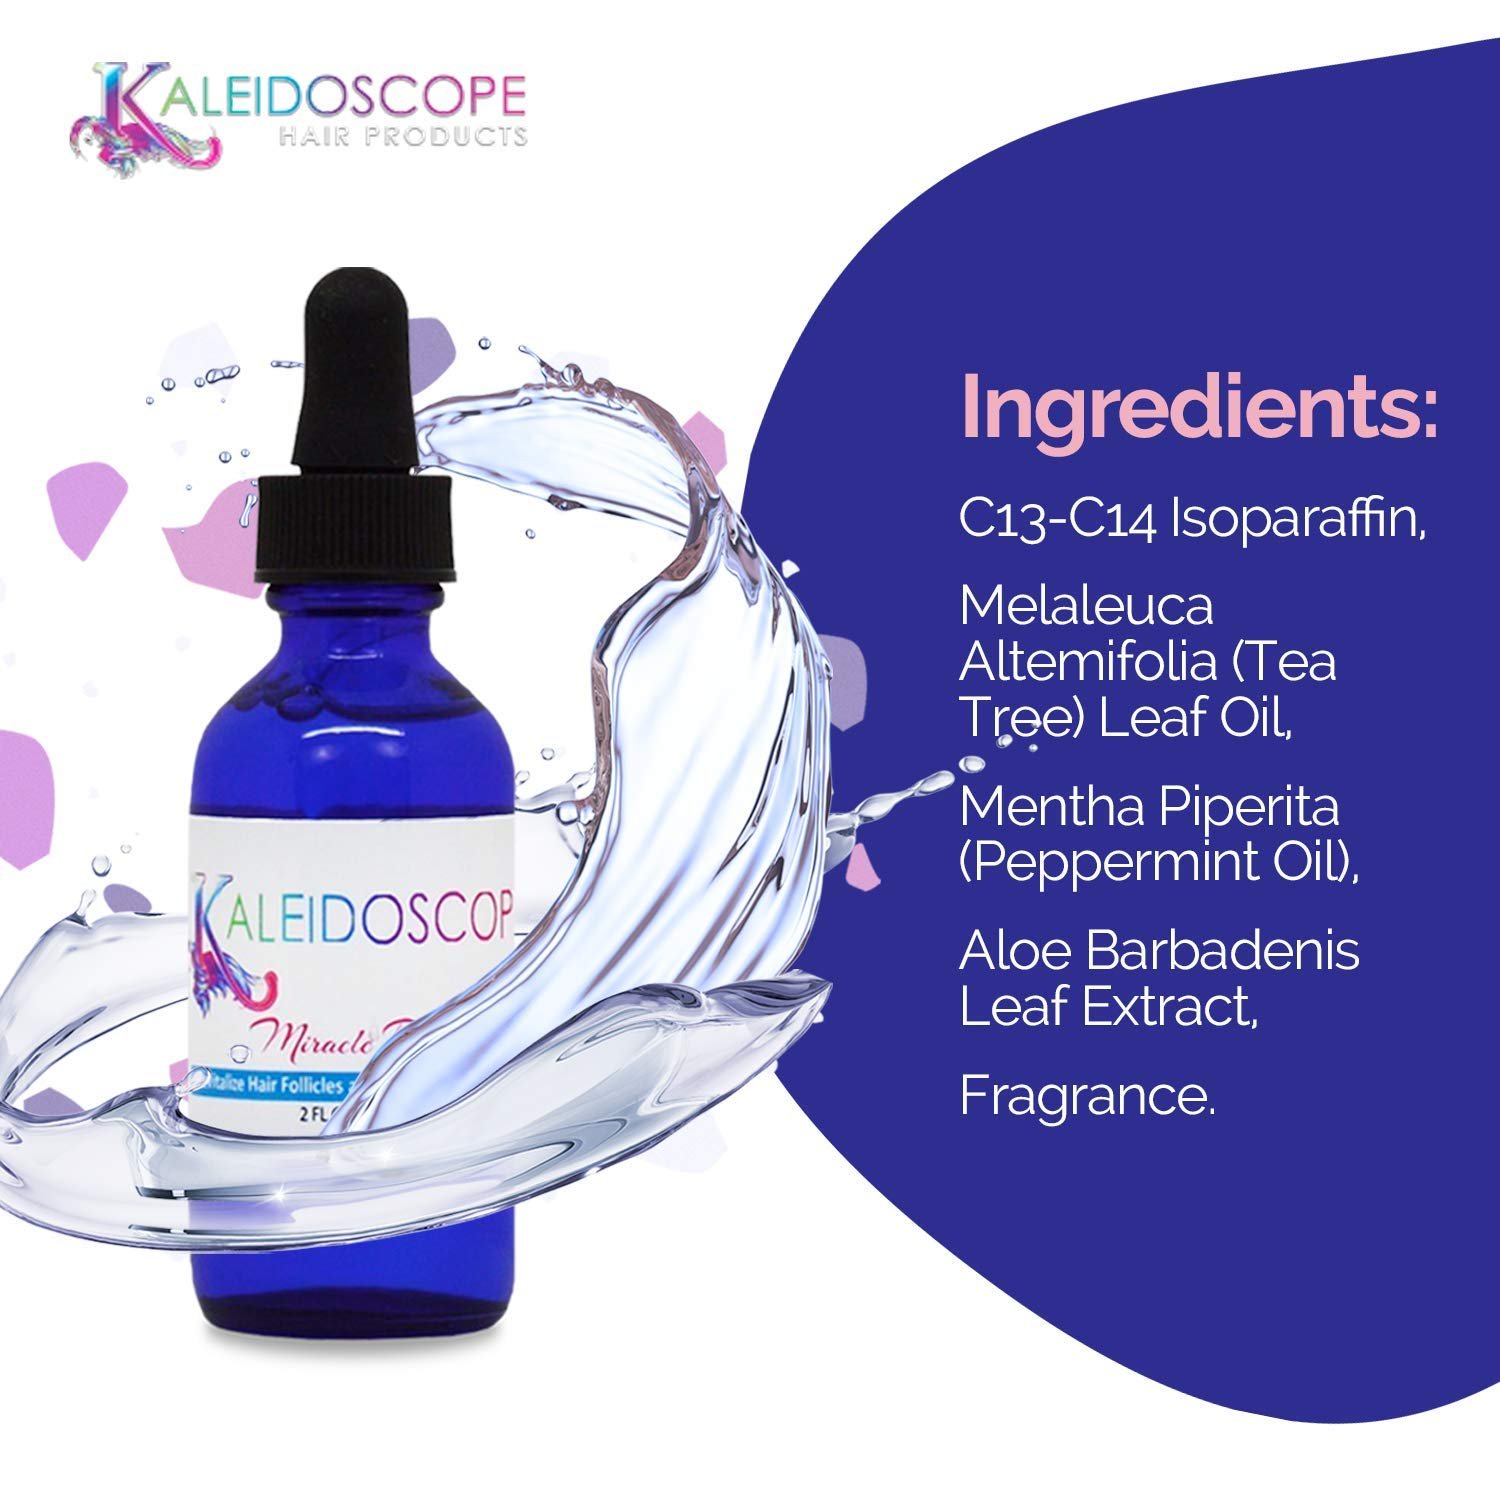 kaleidoscope oil drops